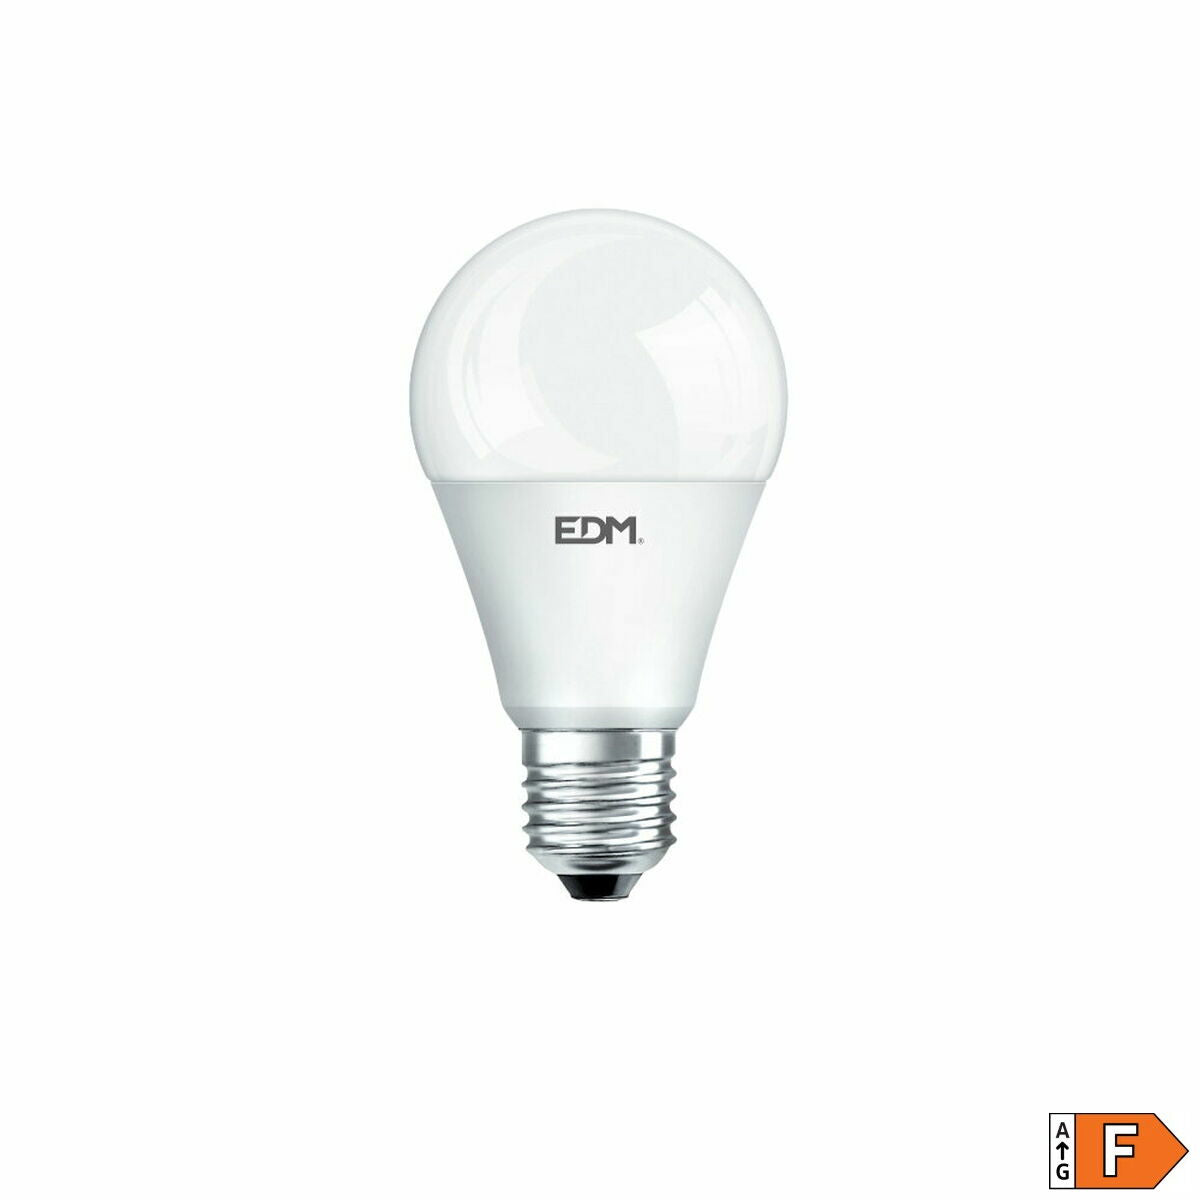 Ledlamp EDM Standard 10 W E27 810 Lm Ø 5,9 x 11 cm (3200 K)